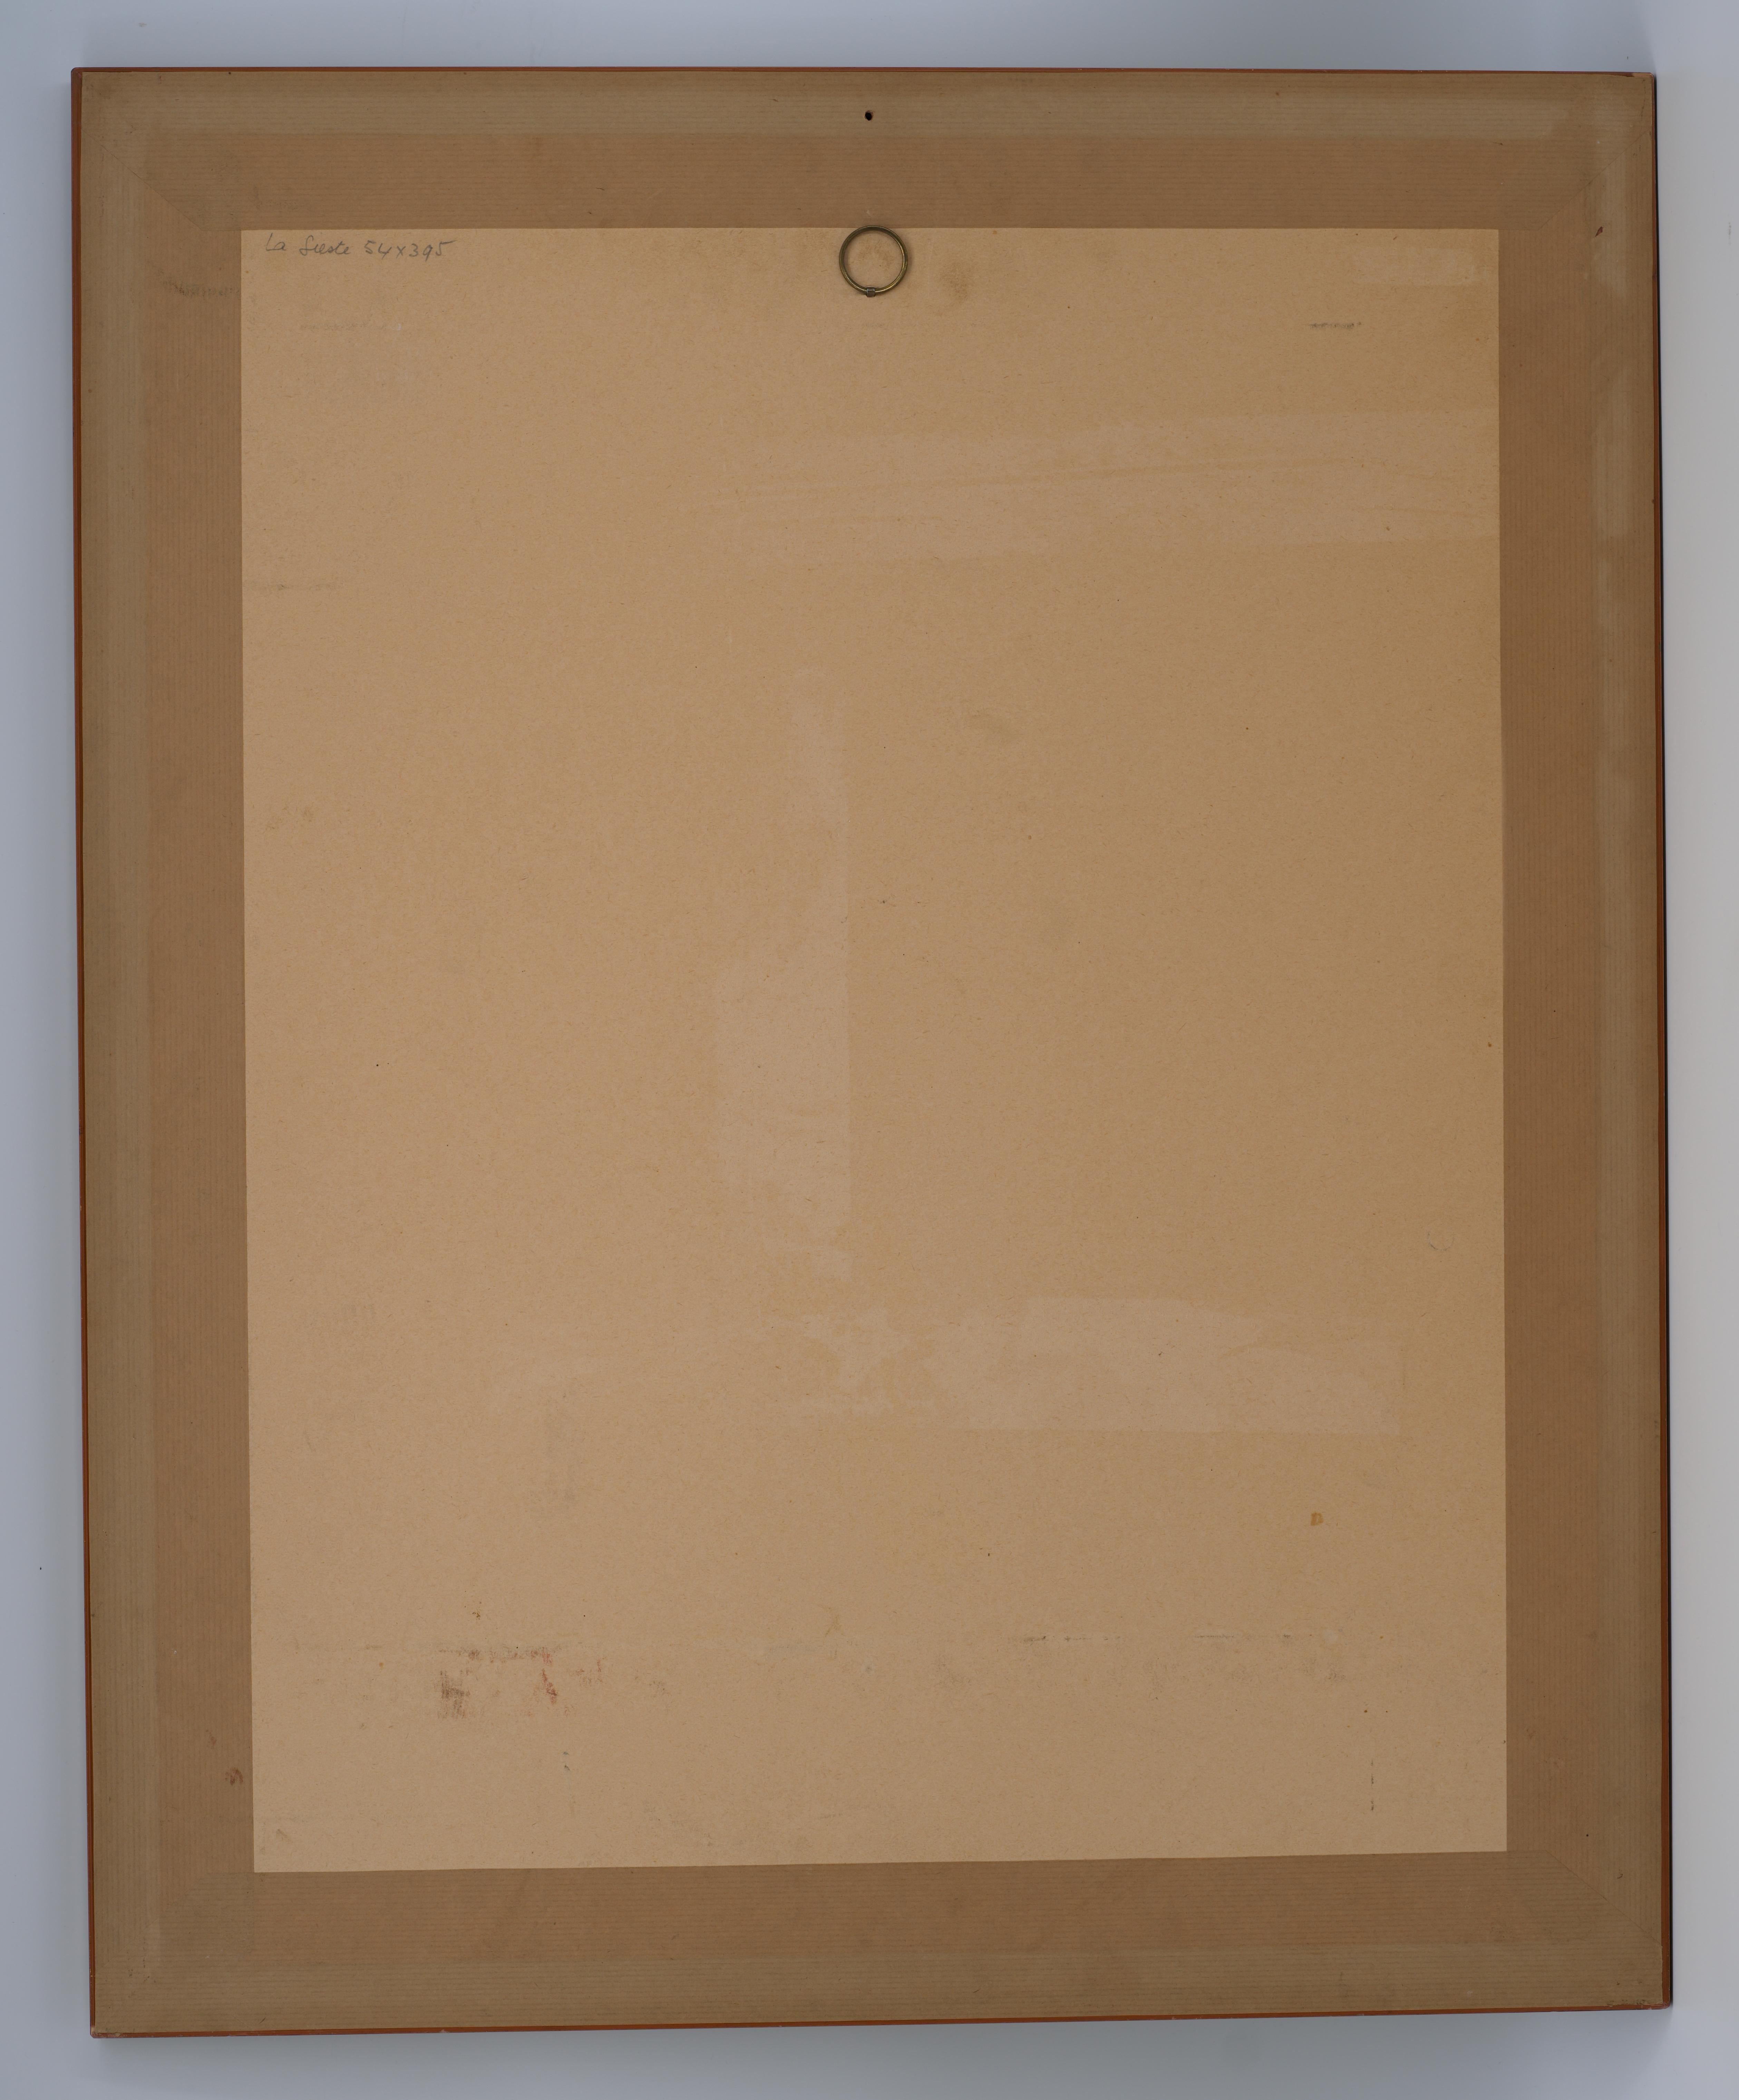 Aquarell von  Louis BERTHOMME SAINT-ANDRE, Frankreich, ca. 1925. Das Nickerchen. Mit Rahmen: 75x60.5 cm - 29.5x23.8 inches, ohne Rahmen, nur das Aquarell: 53x39 cm - 20.9x15.35 inches. Signiert unten links 